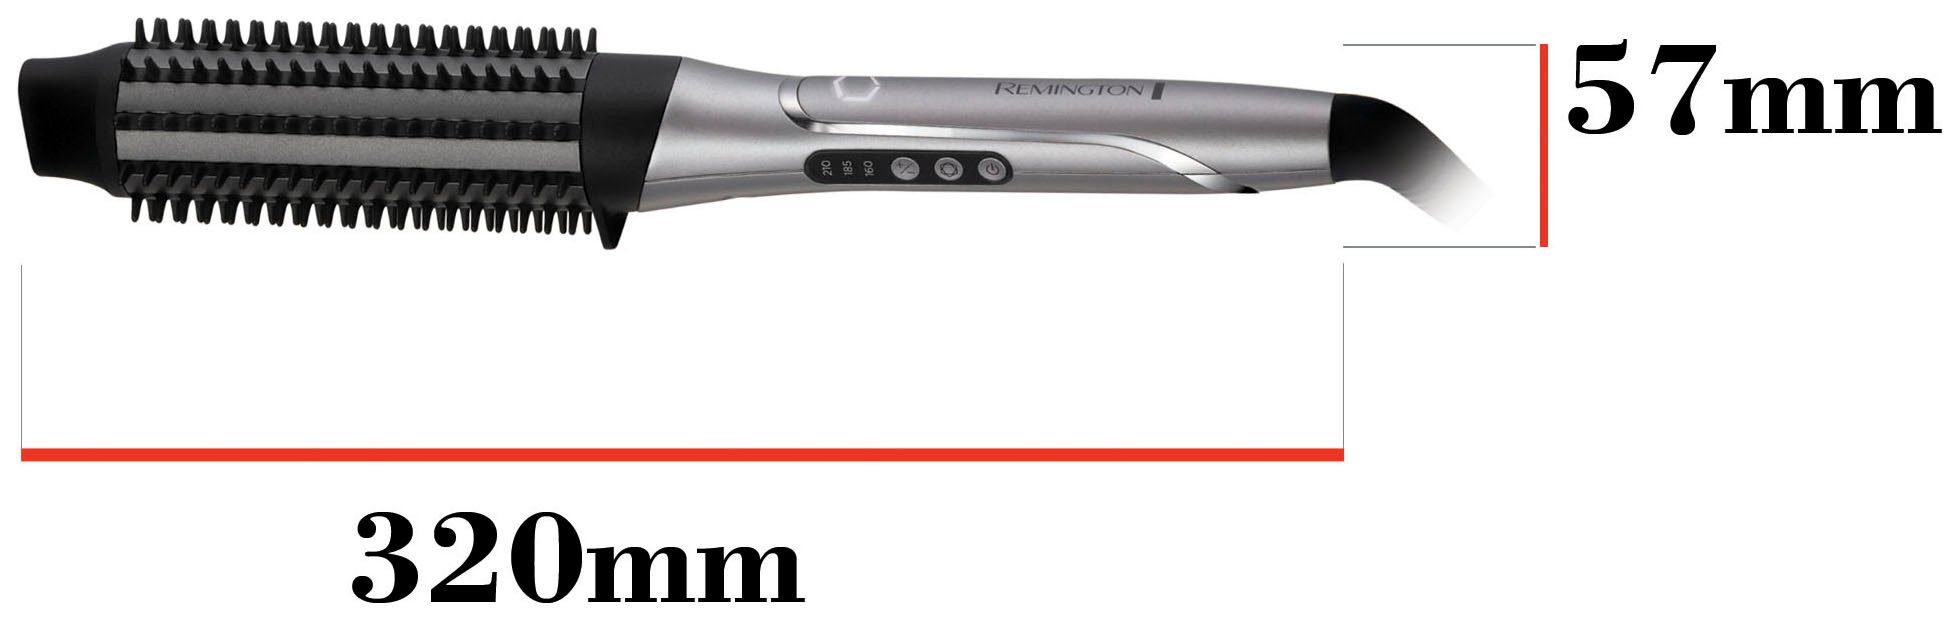 Warmluftbürste Airstyler/Rund-&Warmluftbürste) Hitze Volumenbürste personalisiert CB9800, Remington PROluxe (lernfähiger You